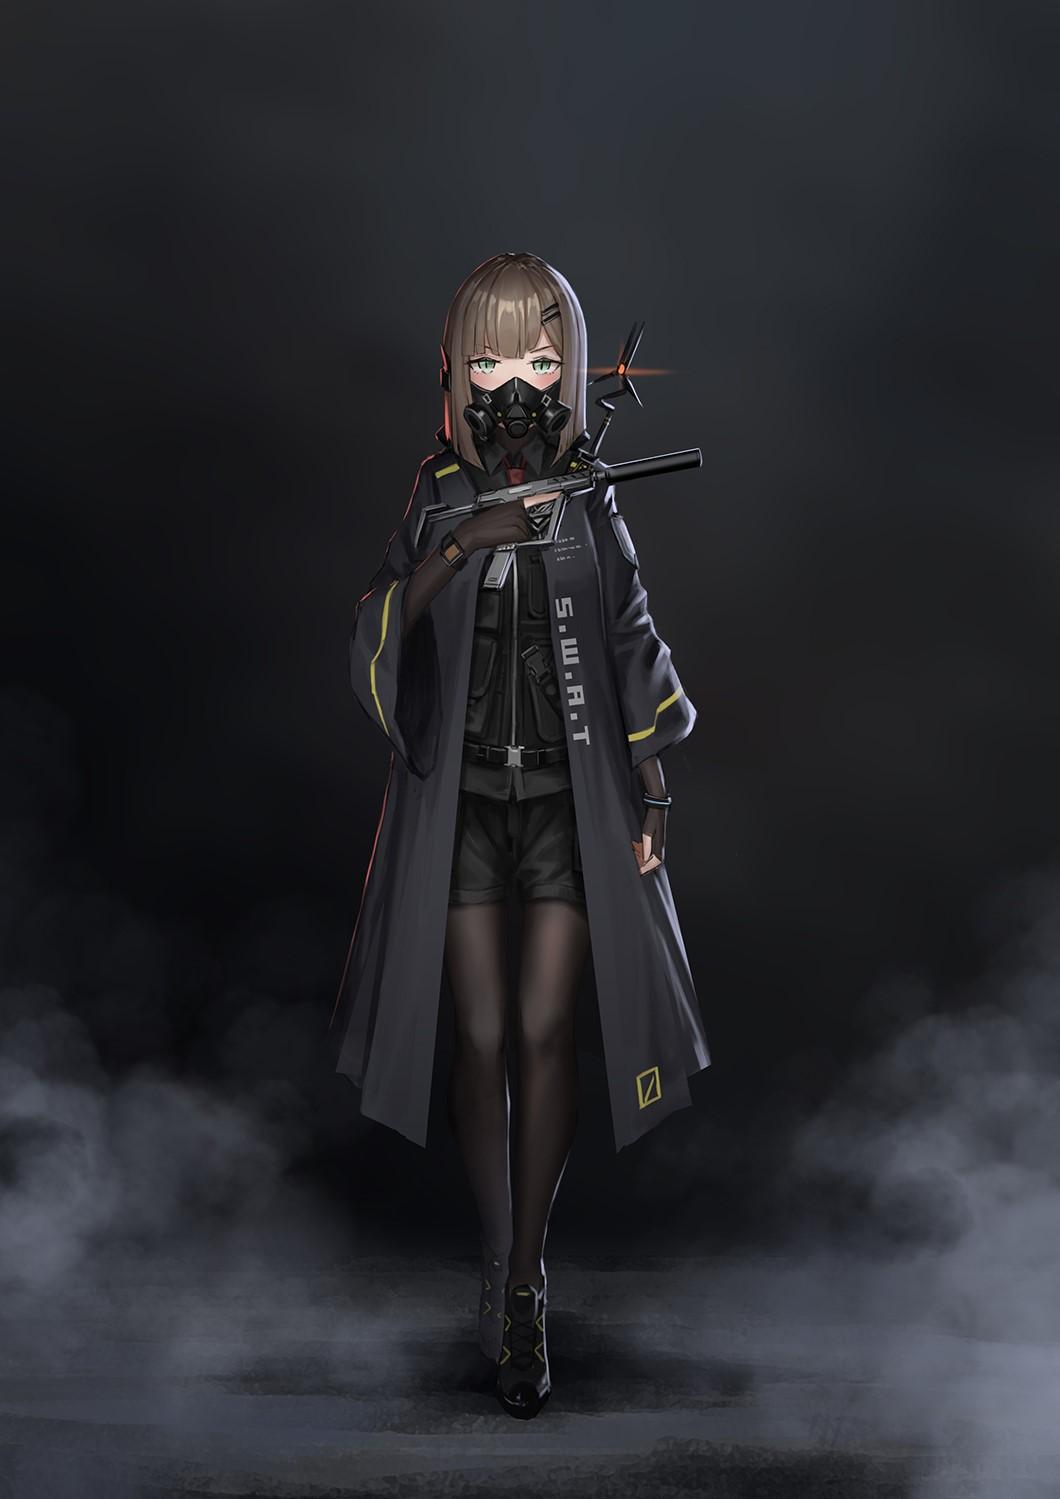 Anime Weapon Yurichtofen Girls Portrait Display